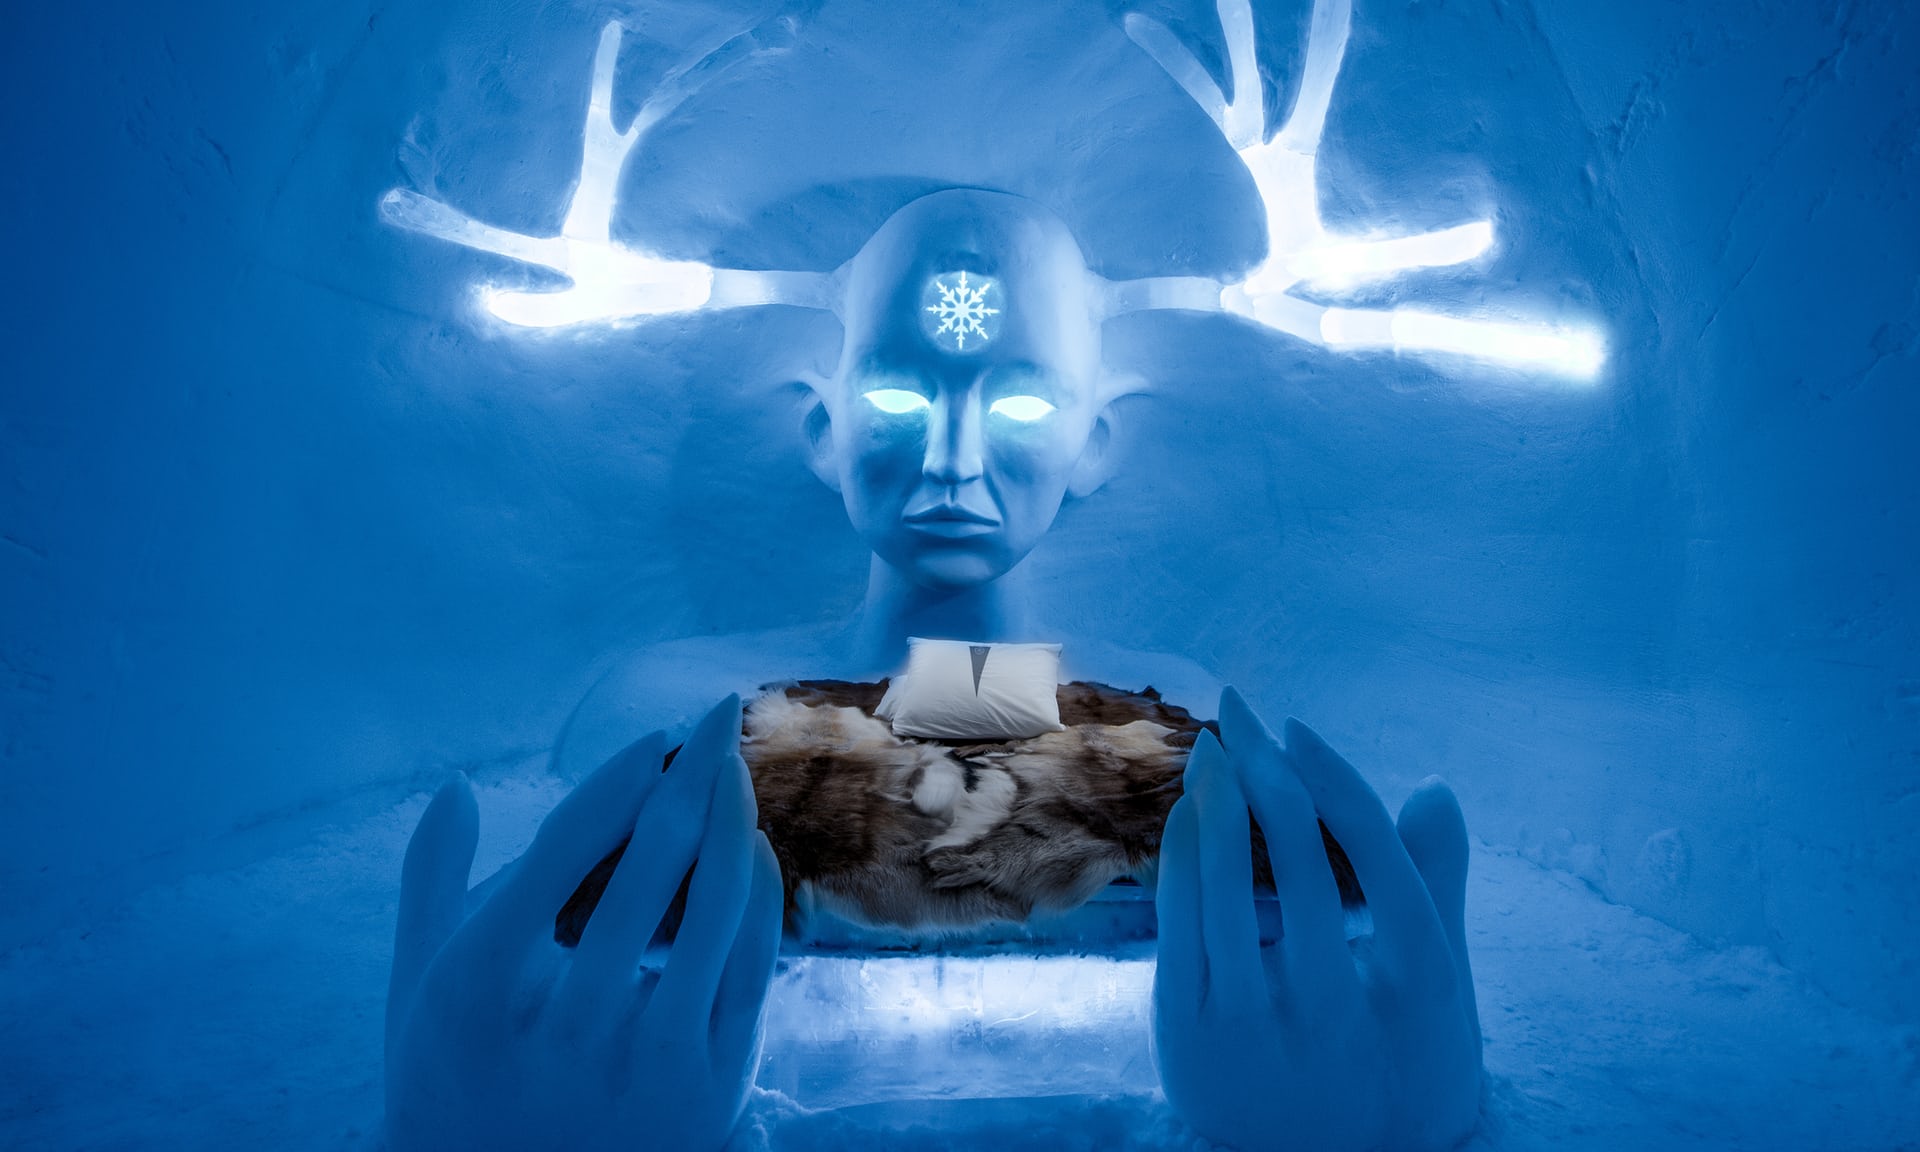 queen of north ice sculpture